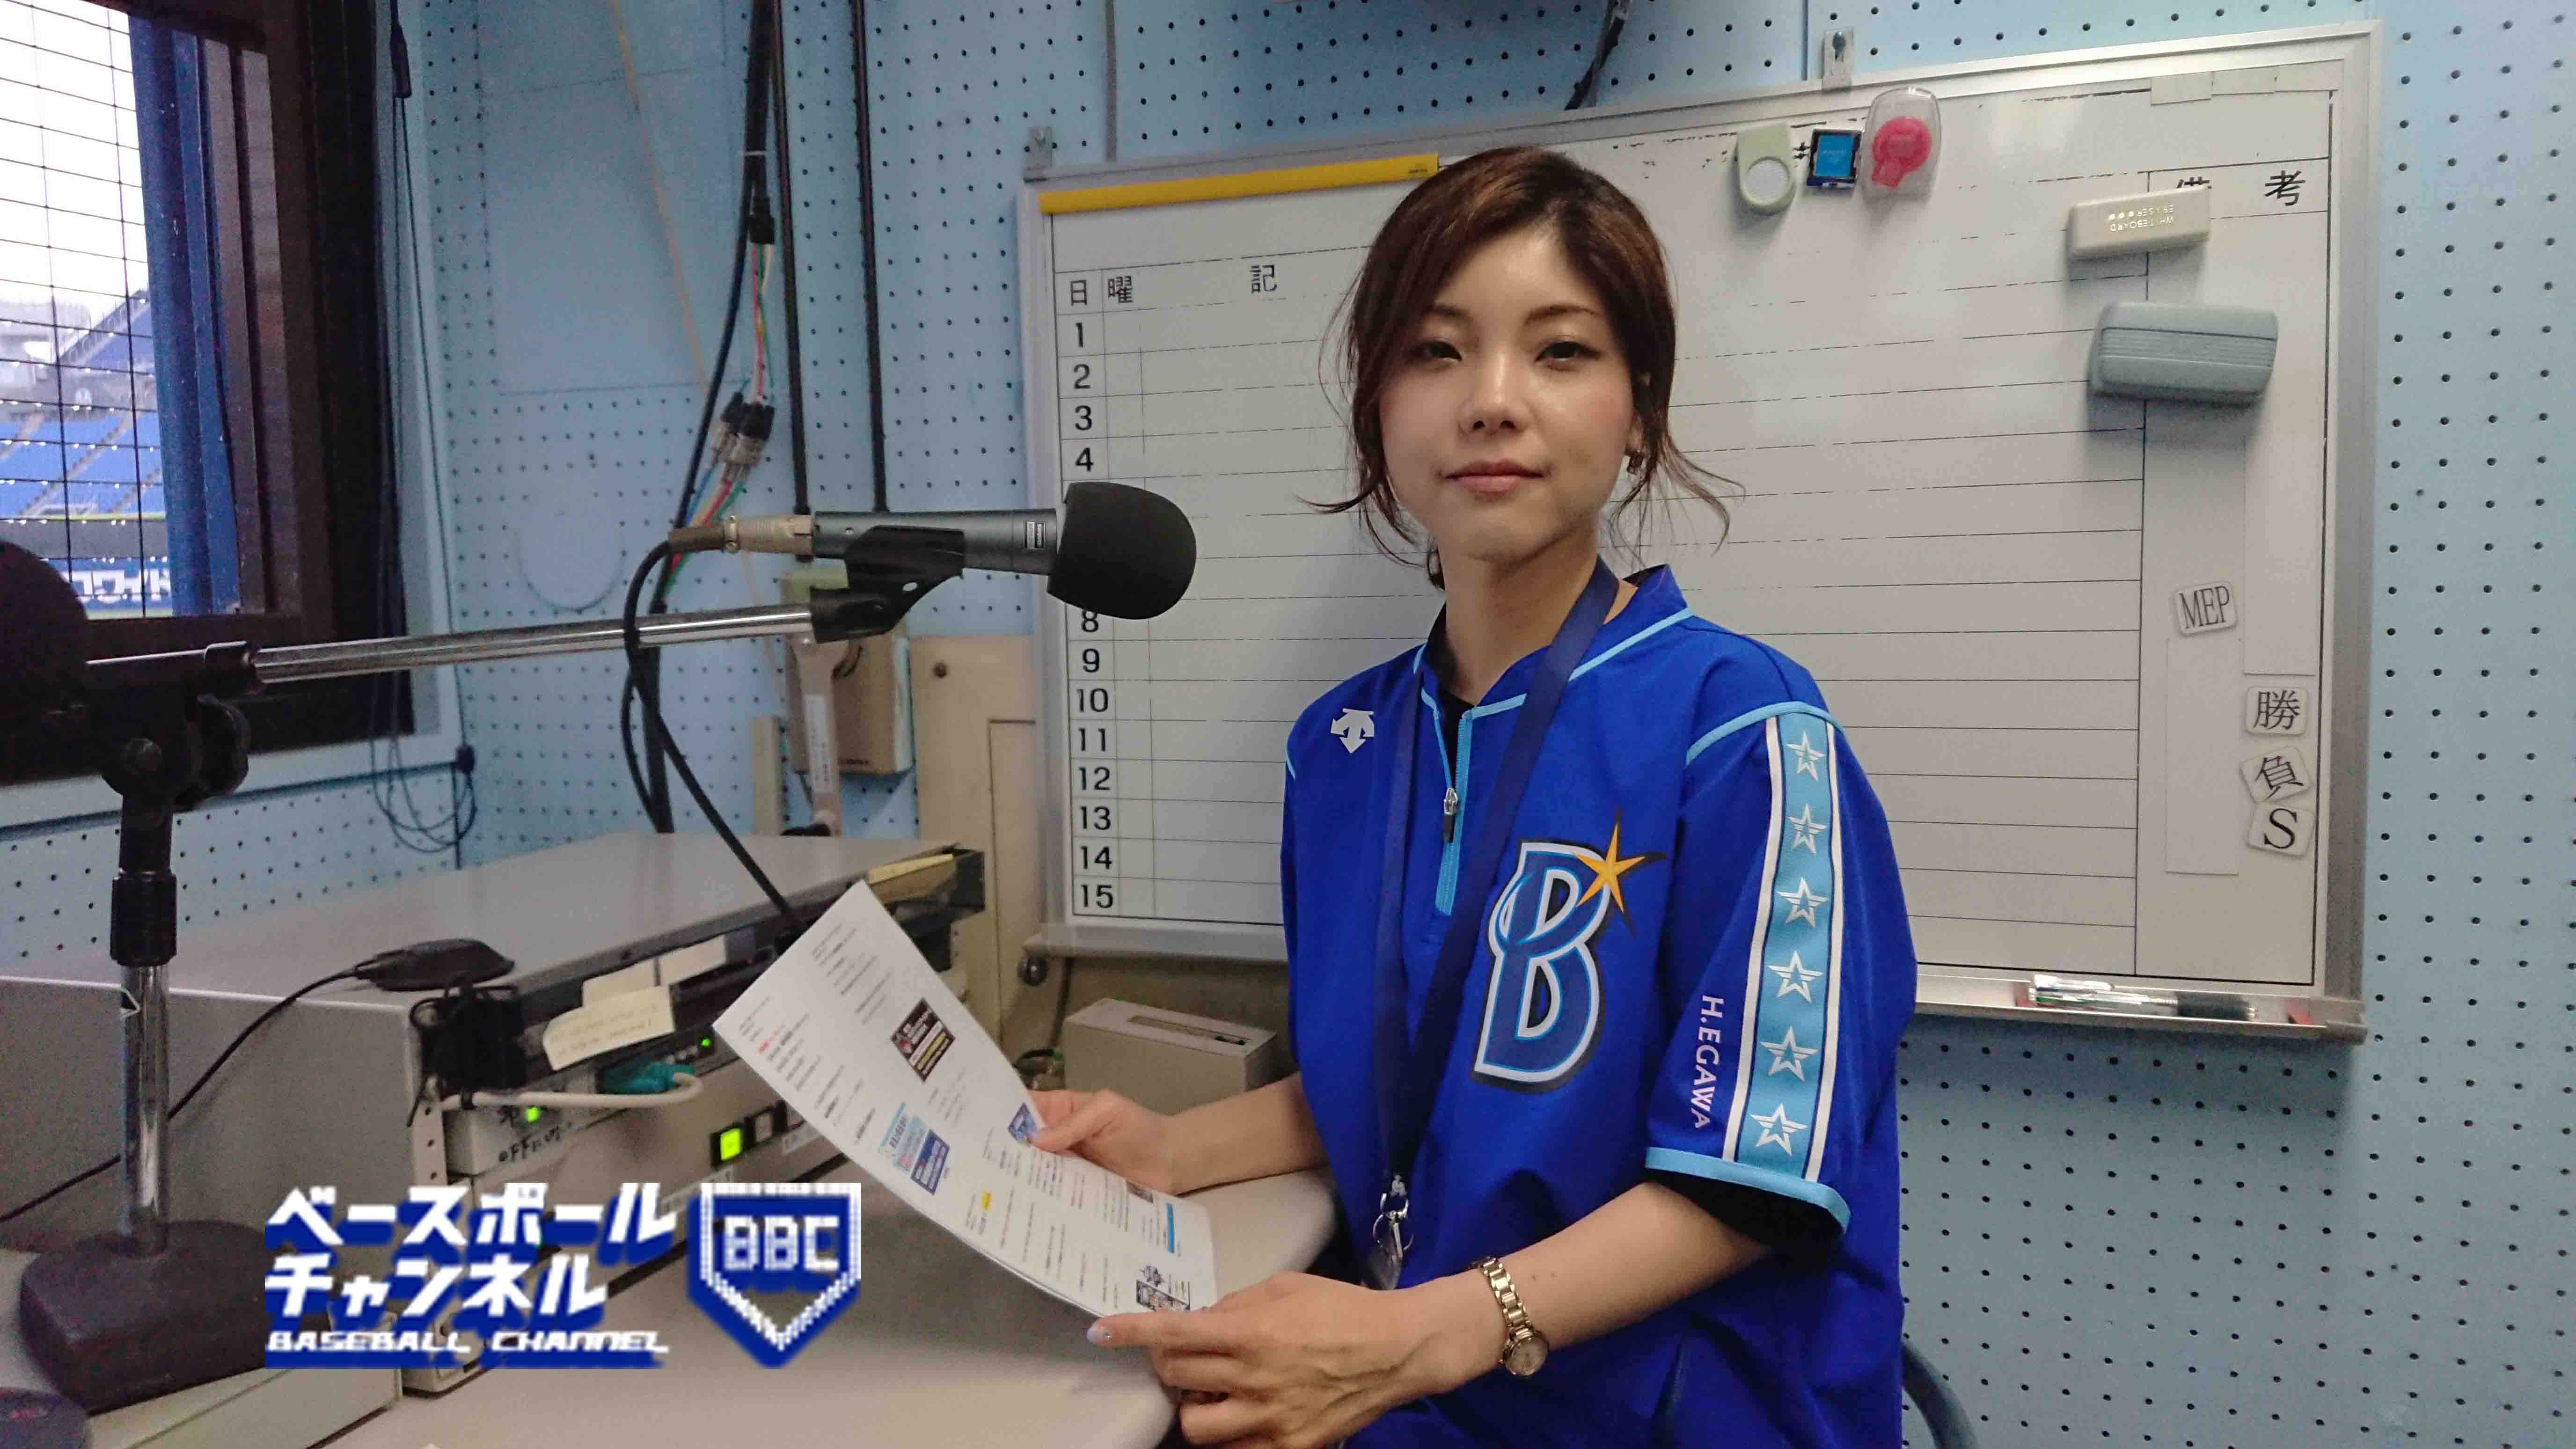 ベイスターズと横浜スタジアムを 声 で盛り上げるウグイス嬢 ベースボールチャンネル Baseball Channel